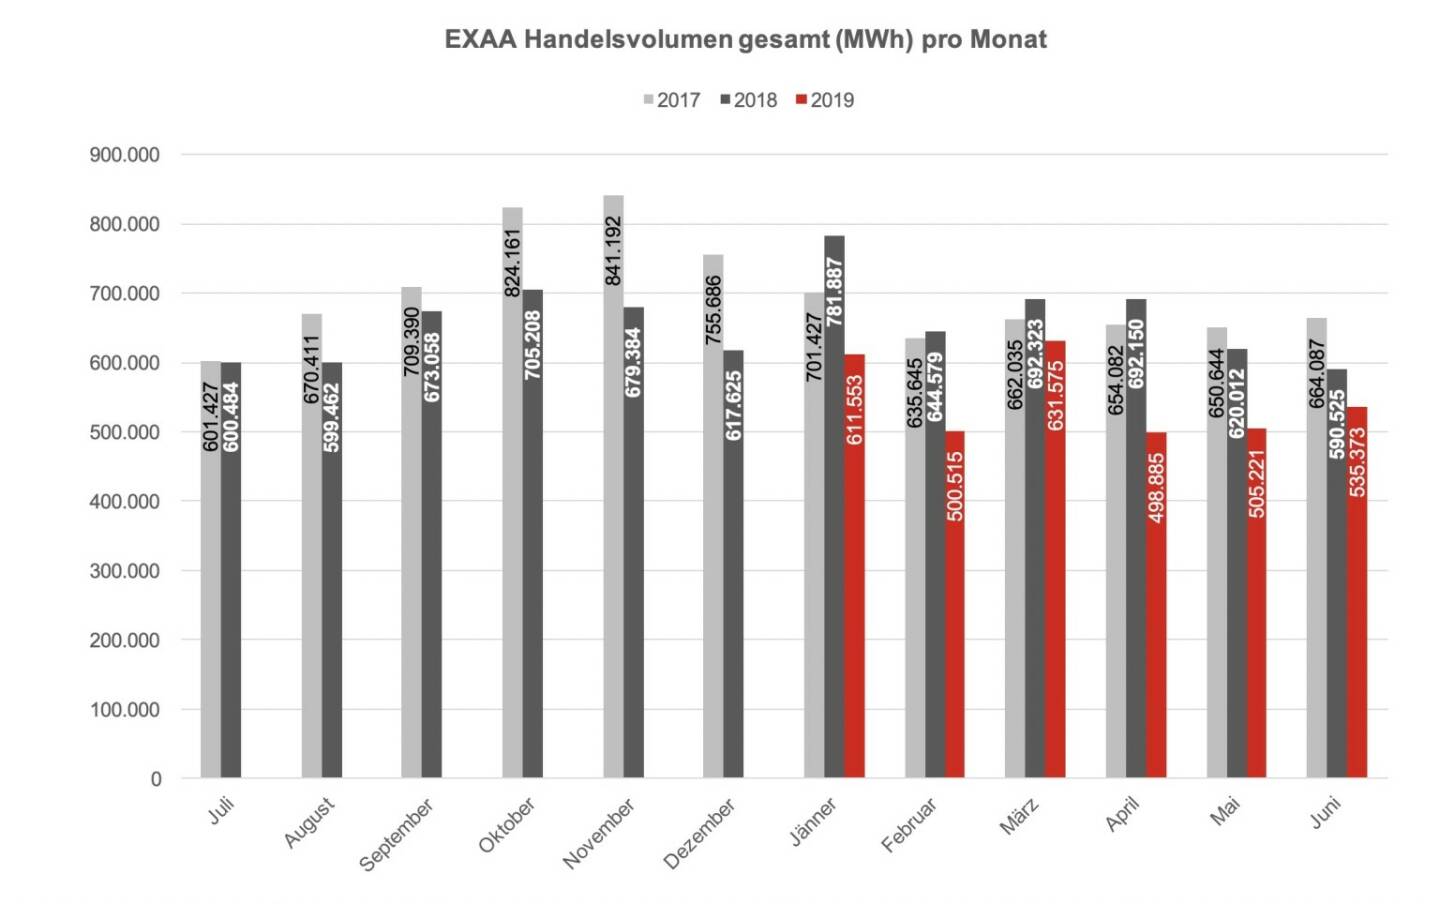 Betrachtet man den österreichischen und deutschen Markt getrennt, so konnte im österreichischen Liefergebiet ein Volumen von 241.035 MWh und im deutschen Liefergebiet ein Volumen von 294.337 MWh erzielt werden. Somit wurden 45% des Gesamtvolumens im österreichischen Liefergebiet auktioniert.
Die Preise betrugen im Juni 2019 im Monatsmittel im österreichischen Marktgebiet für das Baseprodukt (00-24 Uhr) 33,19 EUR/MWh und für das Peakprodukt (08-20 Uhr) 33,77 EUR/MWh, im deutschen Marktgebiet betrugen die Preise für das Baseprodukt (00-24 Uhr) 33,27 EUR/MWh und für das Peakprodukt (08-20 Uhr) 32,47 EUR/MWh. 